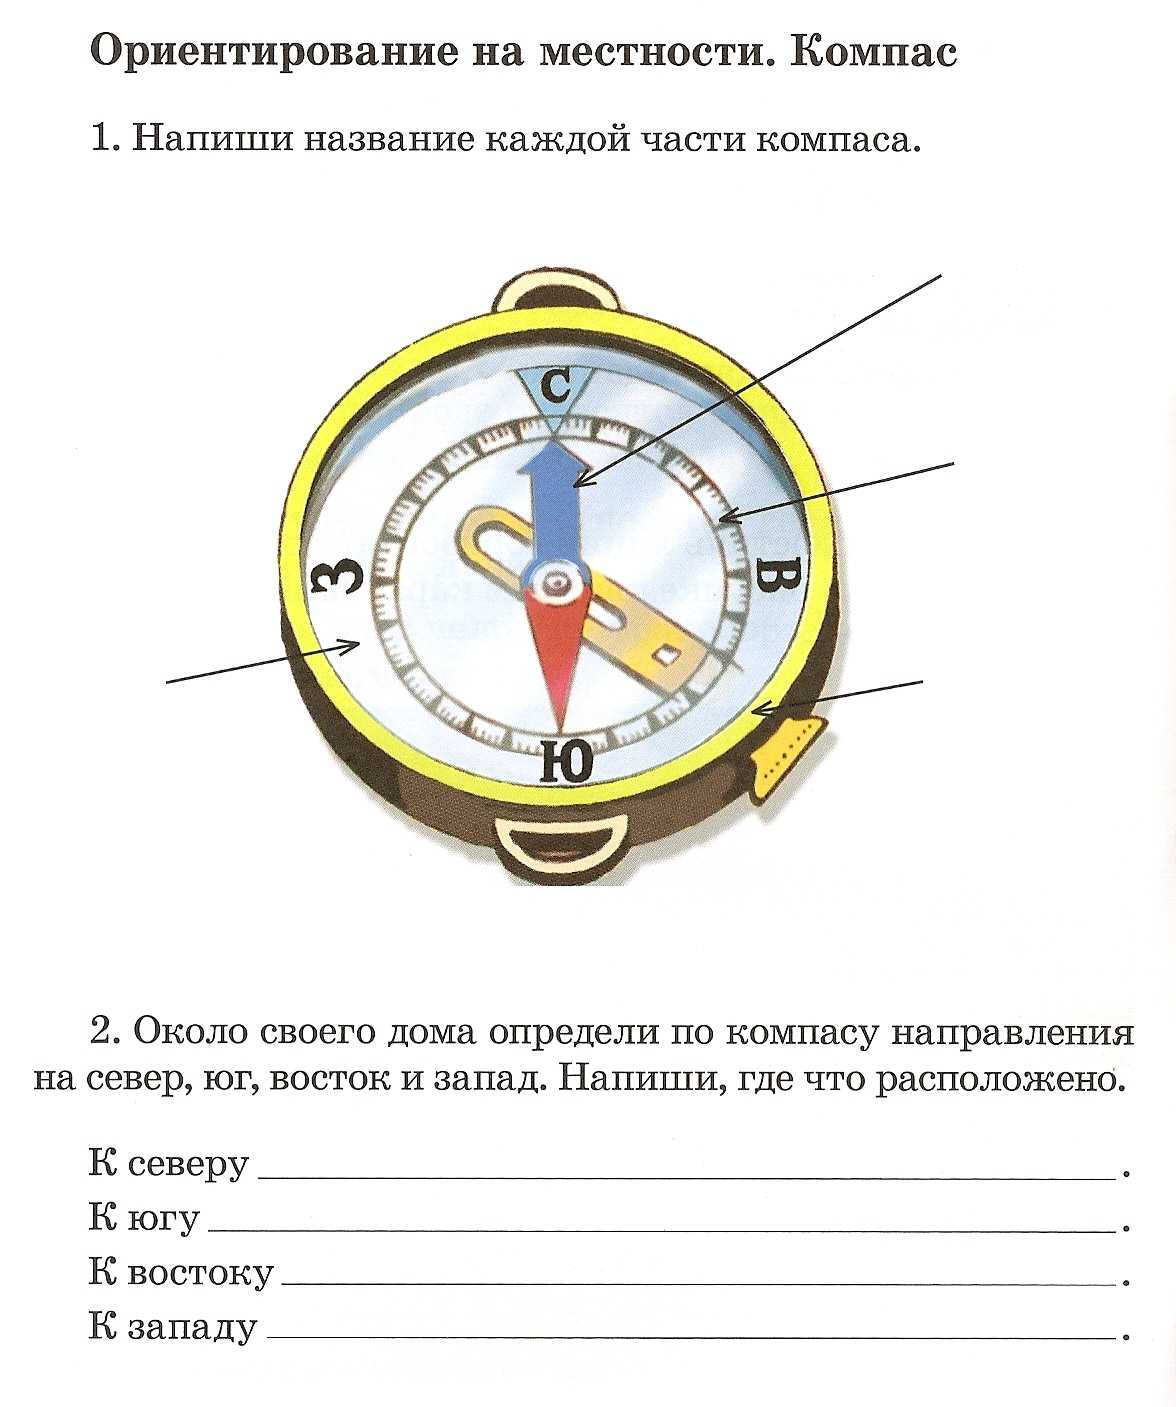 Как работает компас: его устройство и принцип